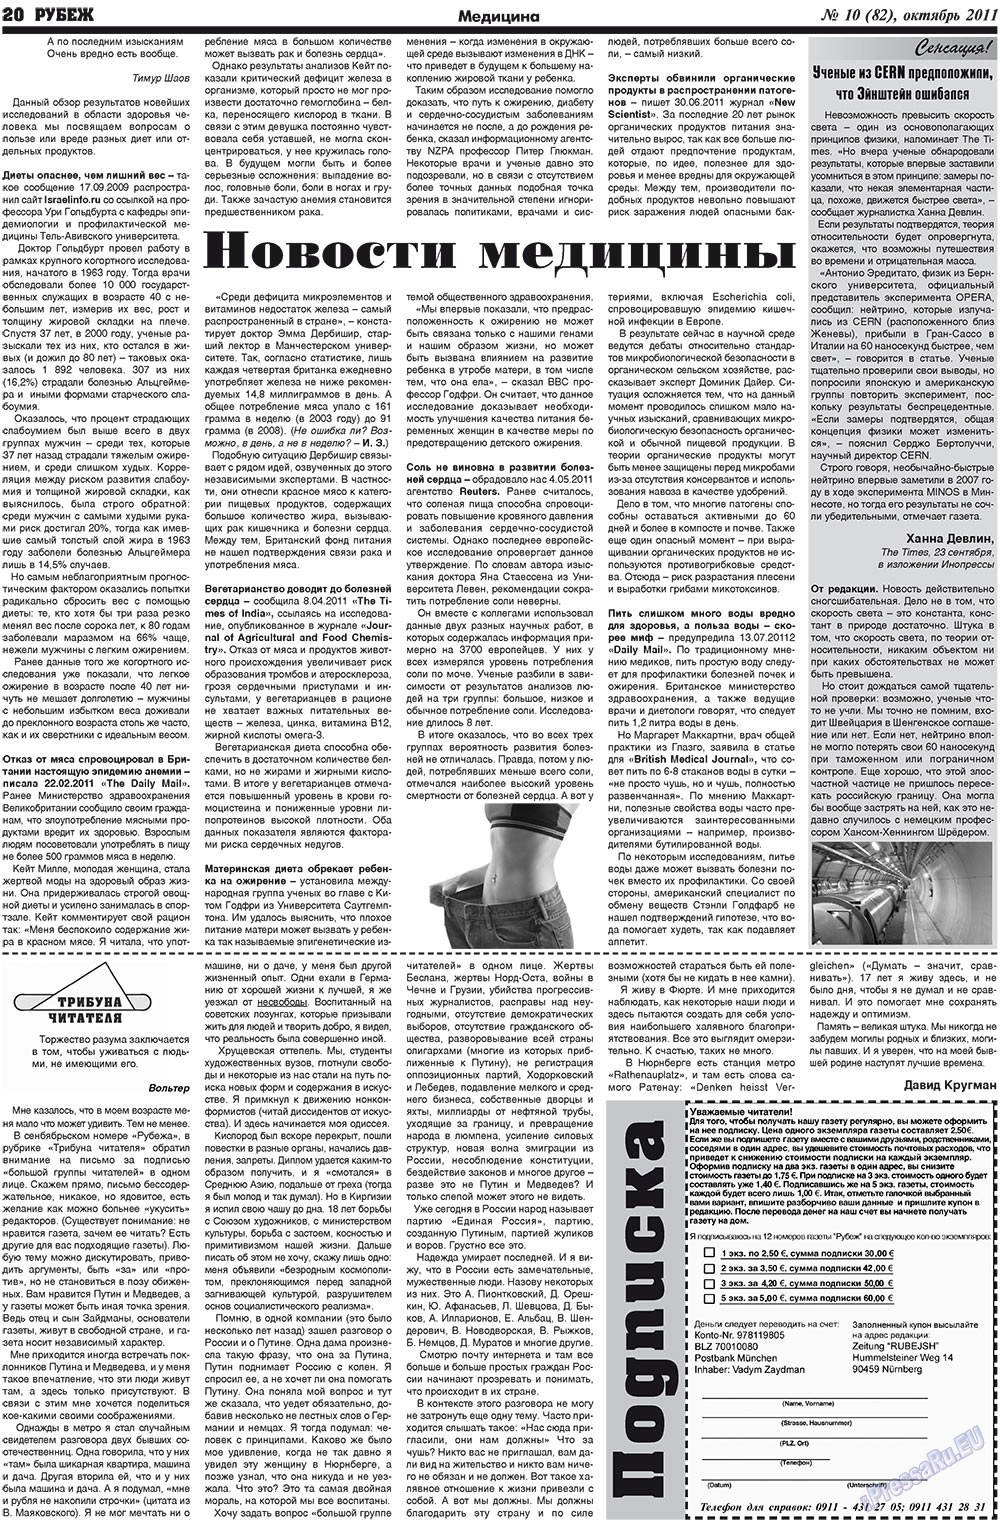 Рубеж (газета). 2011 год, номер 10, стр. 20